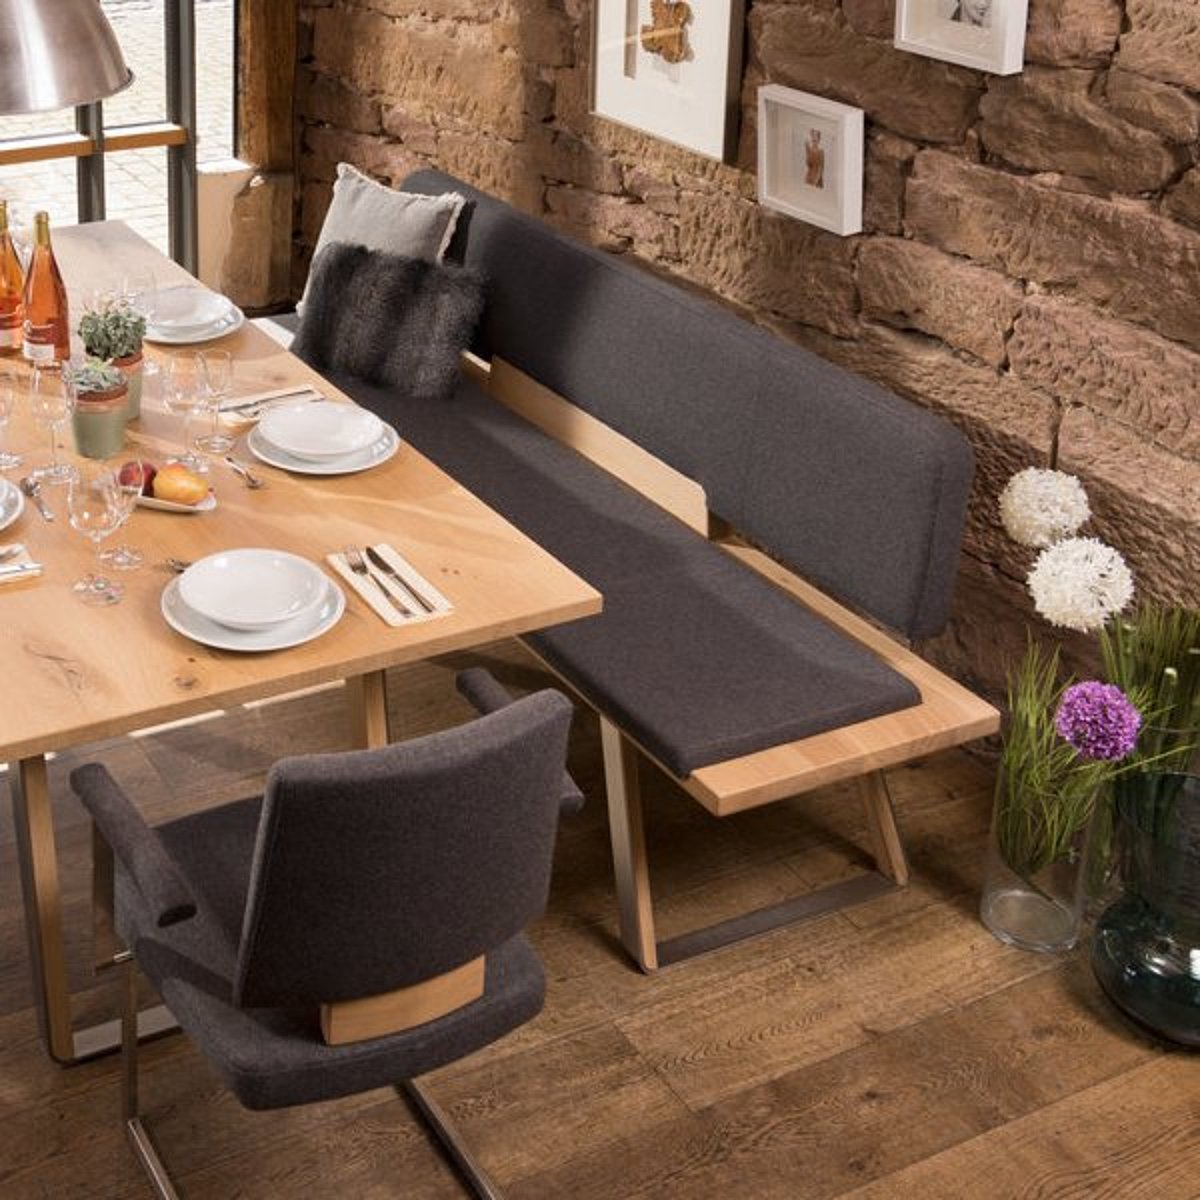 Tisch, Bank und Stühle aus Holz mit grauem Stoff